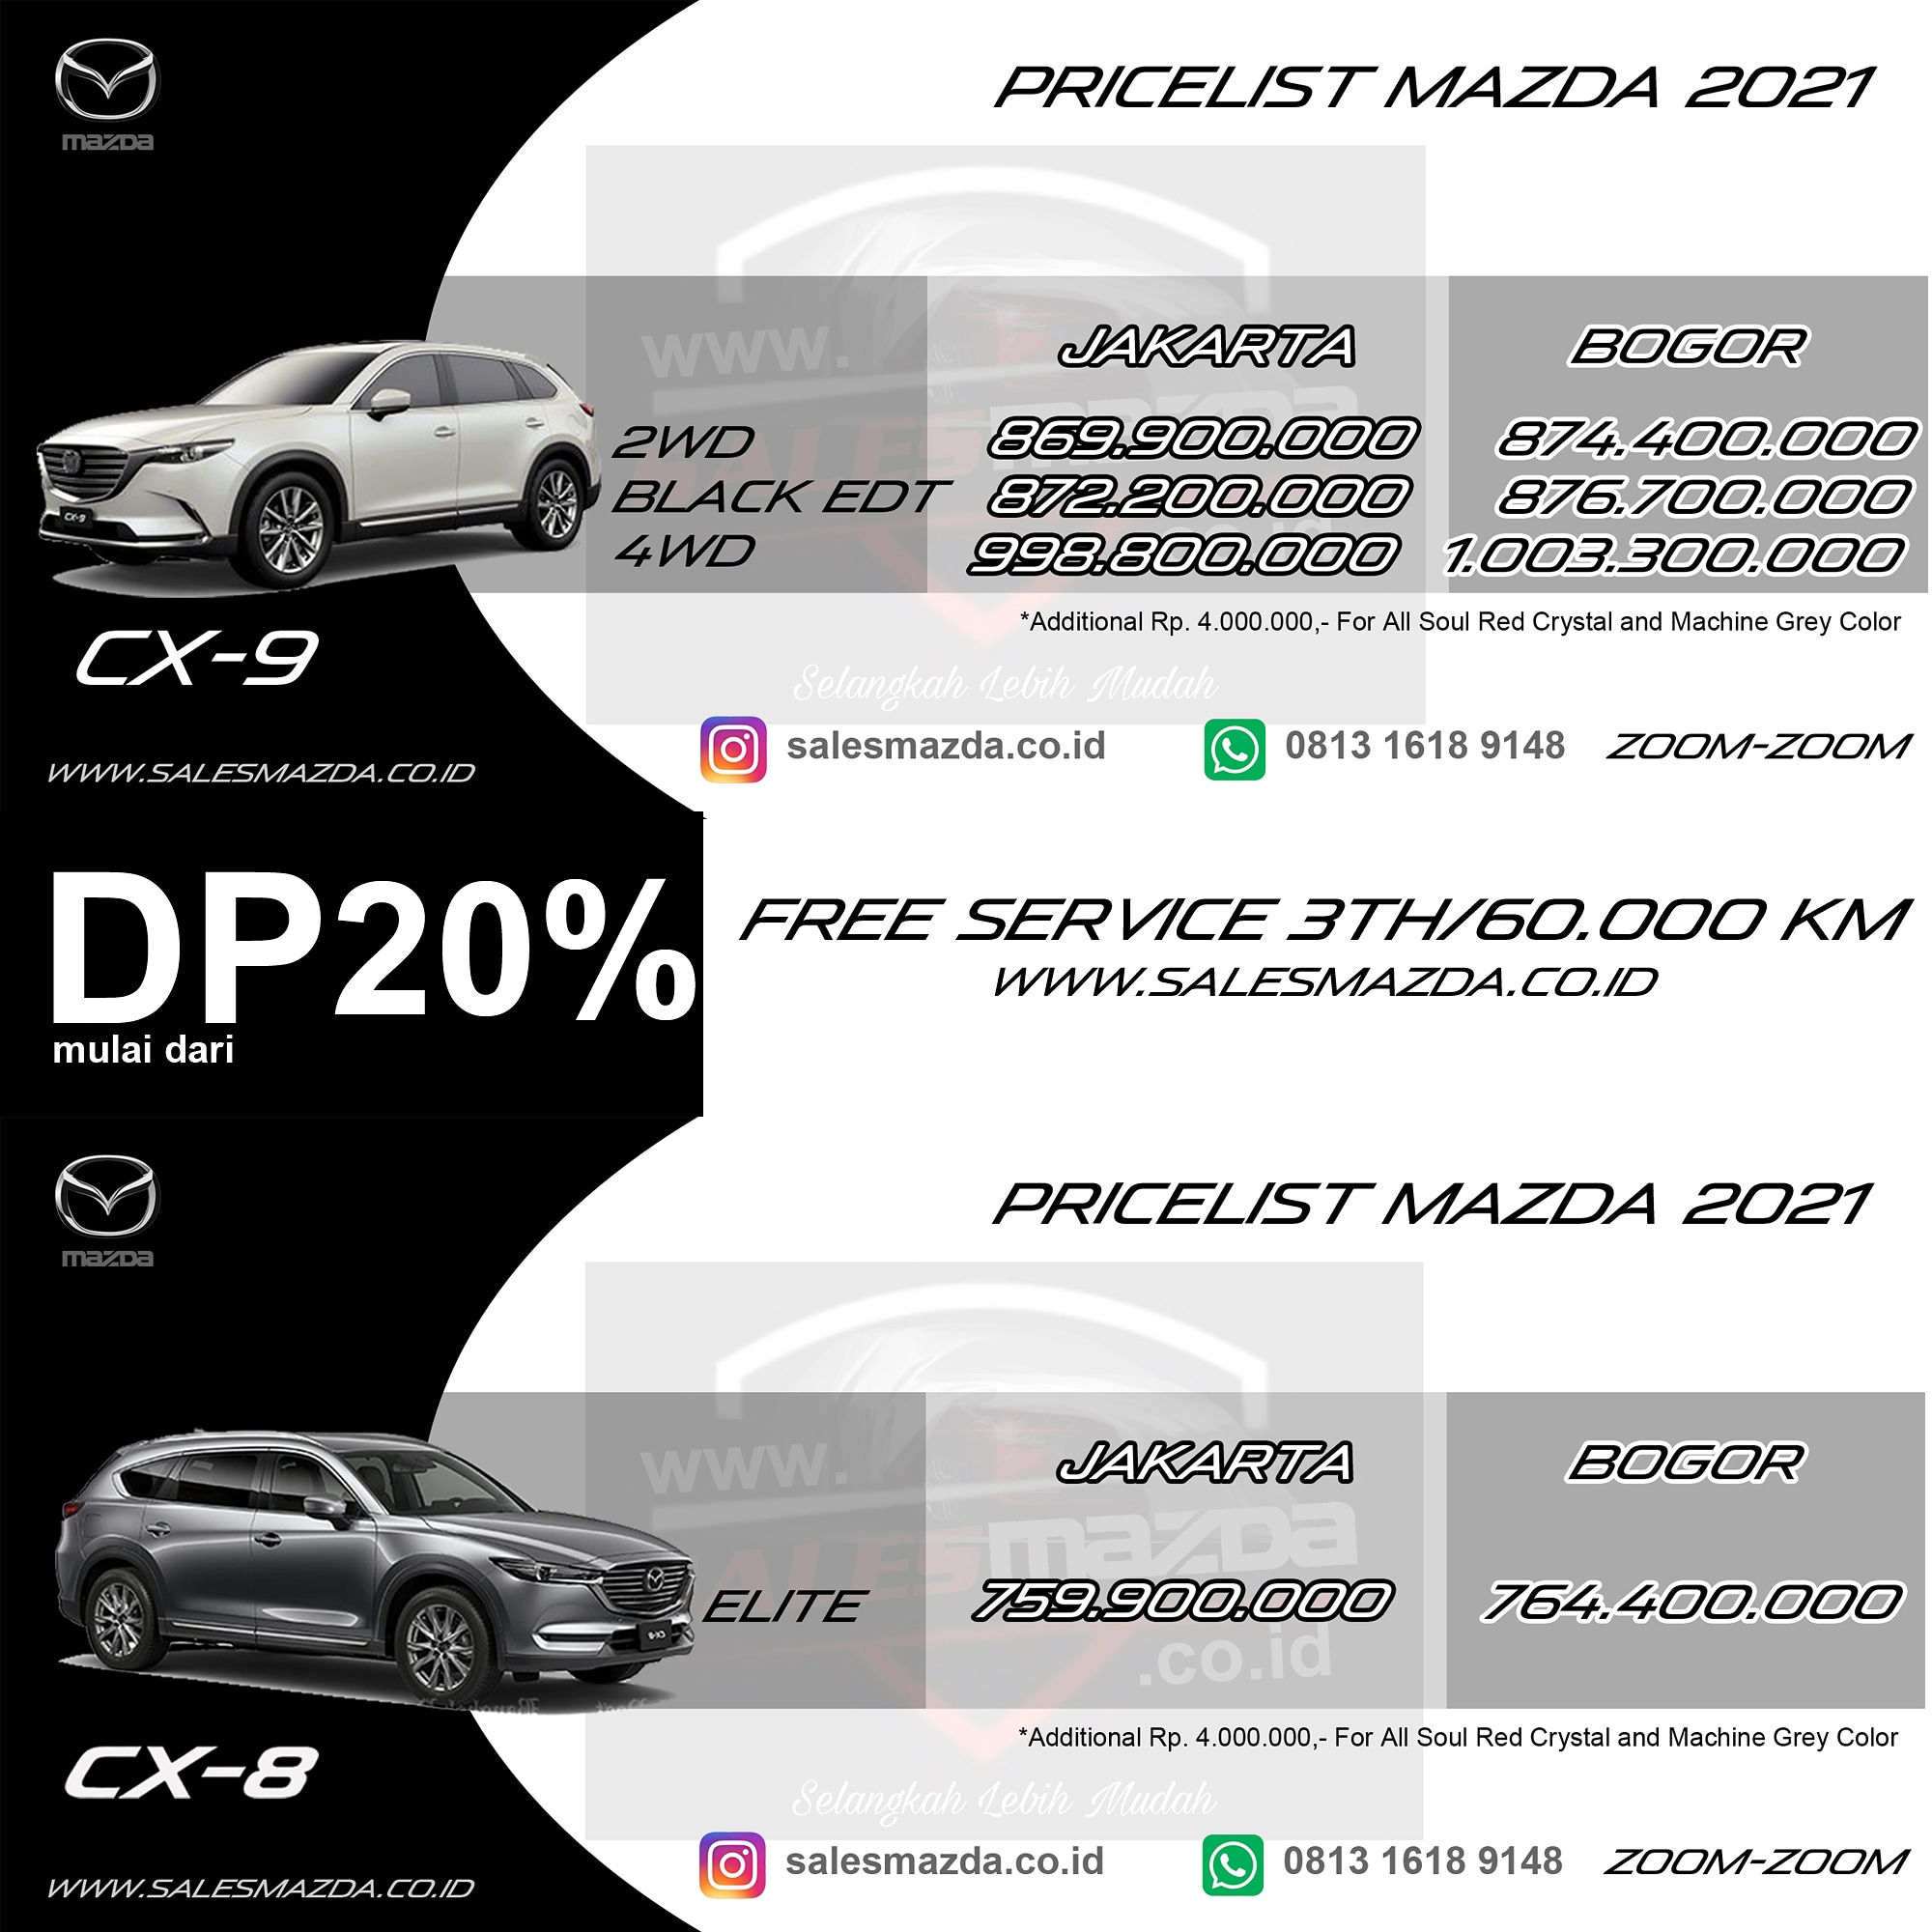 Kredit Mazda Mudah dan Murah